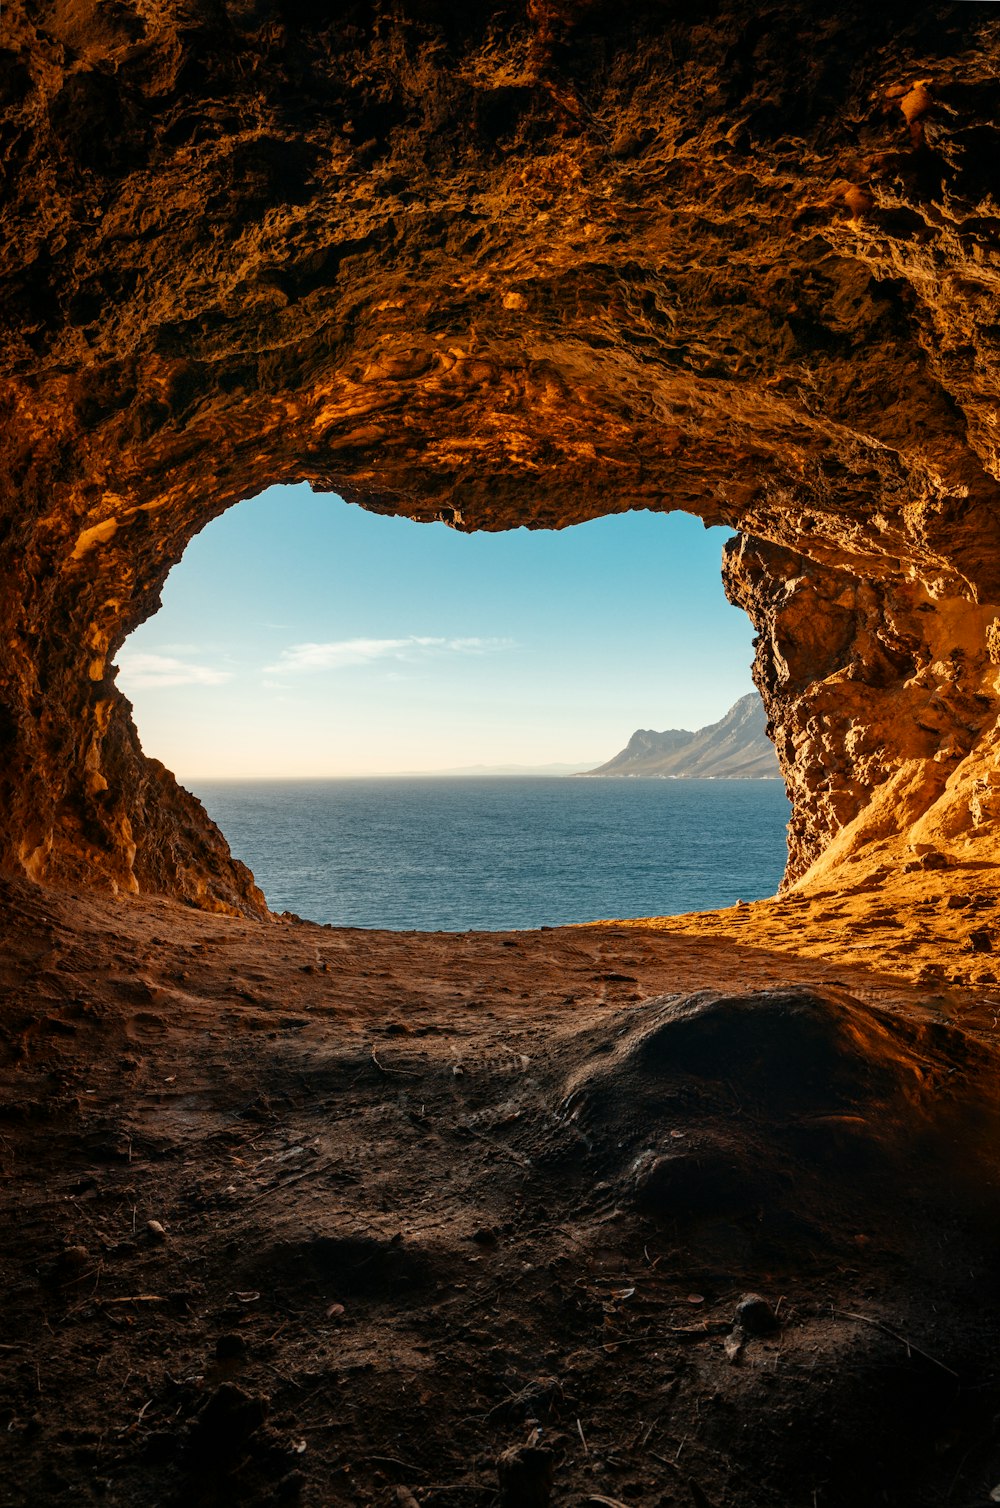 日中の水域近くの茶色の洞窟